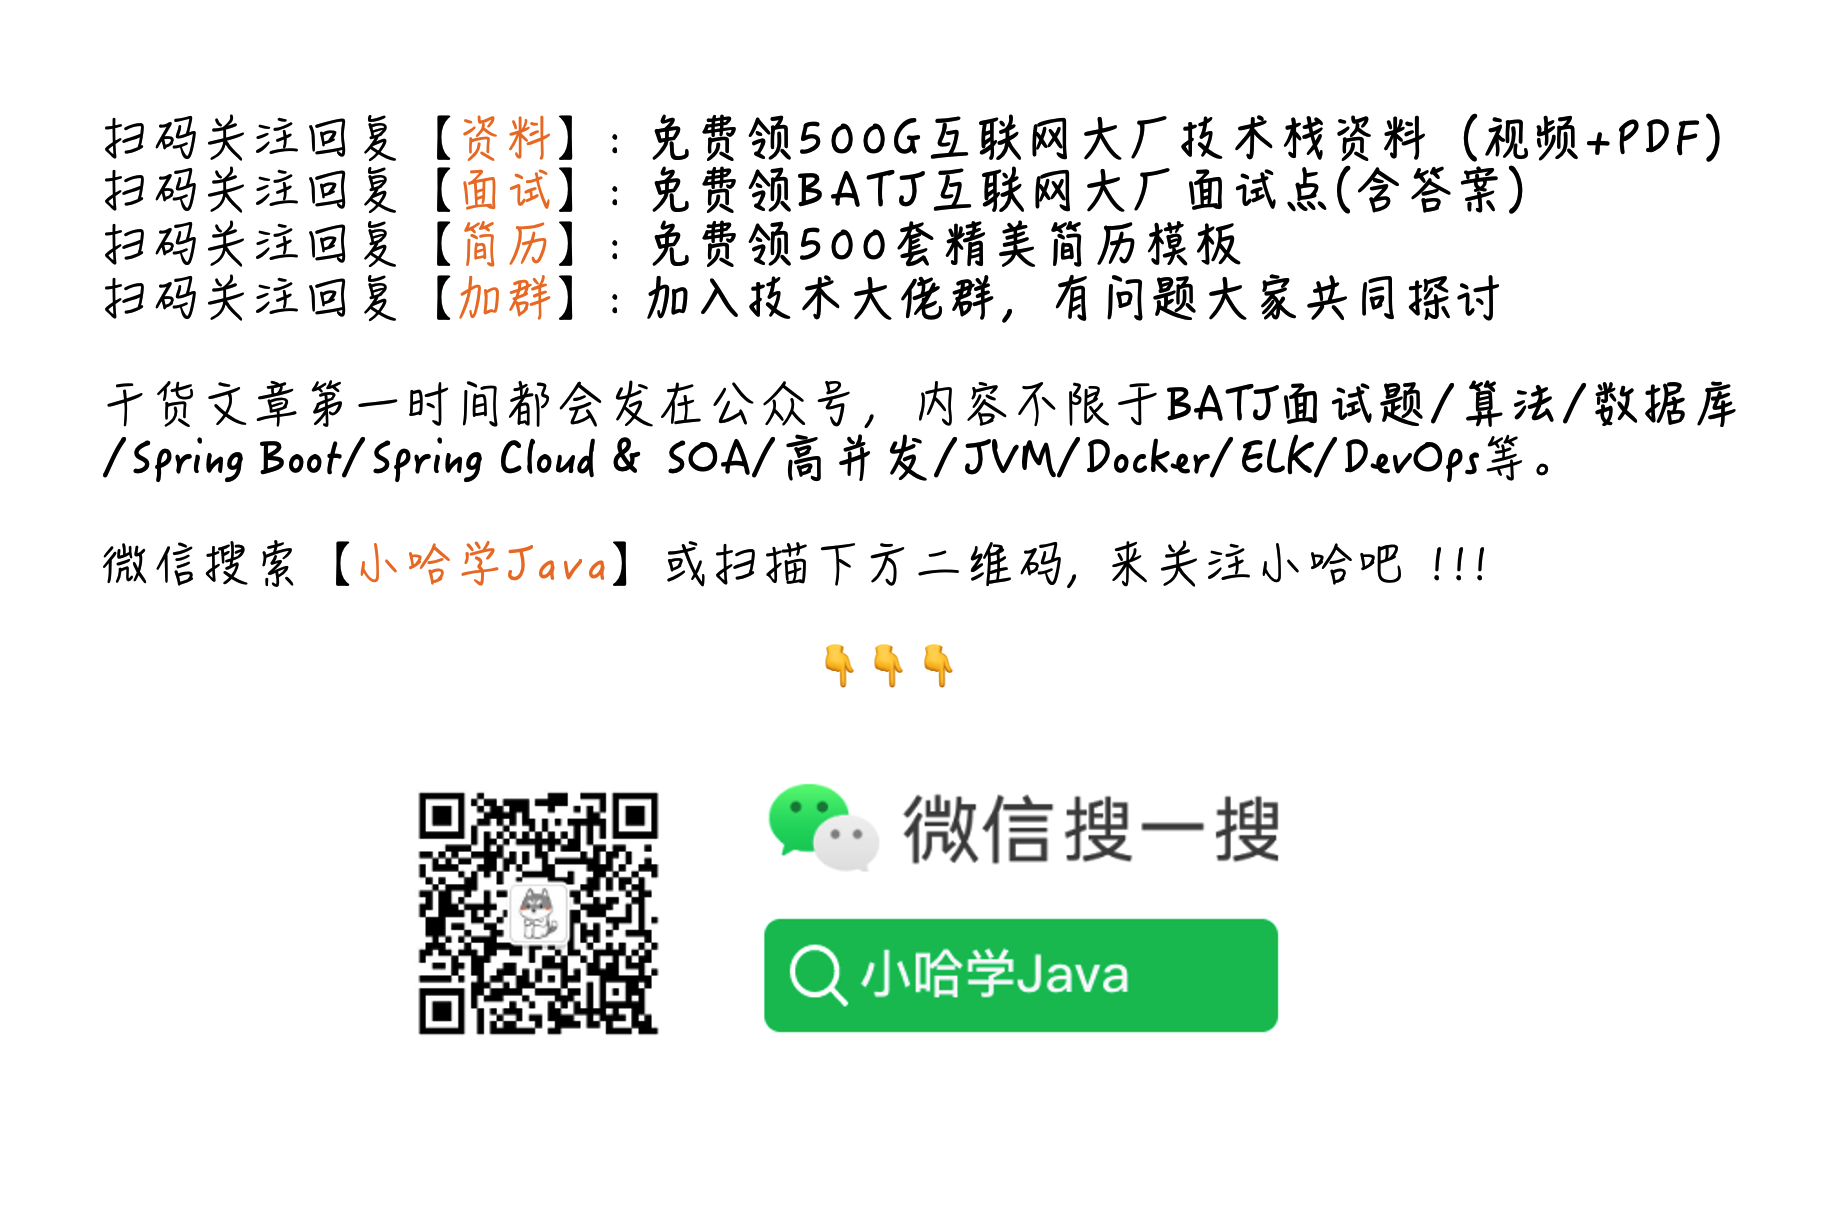 关注微信公众号【小哈学Java】,回复【资料】，即可免费无套路领取资源链接哦